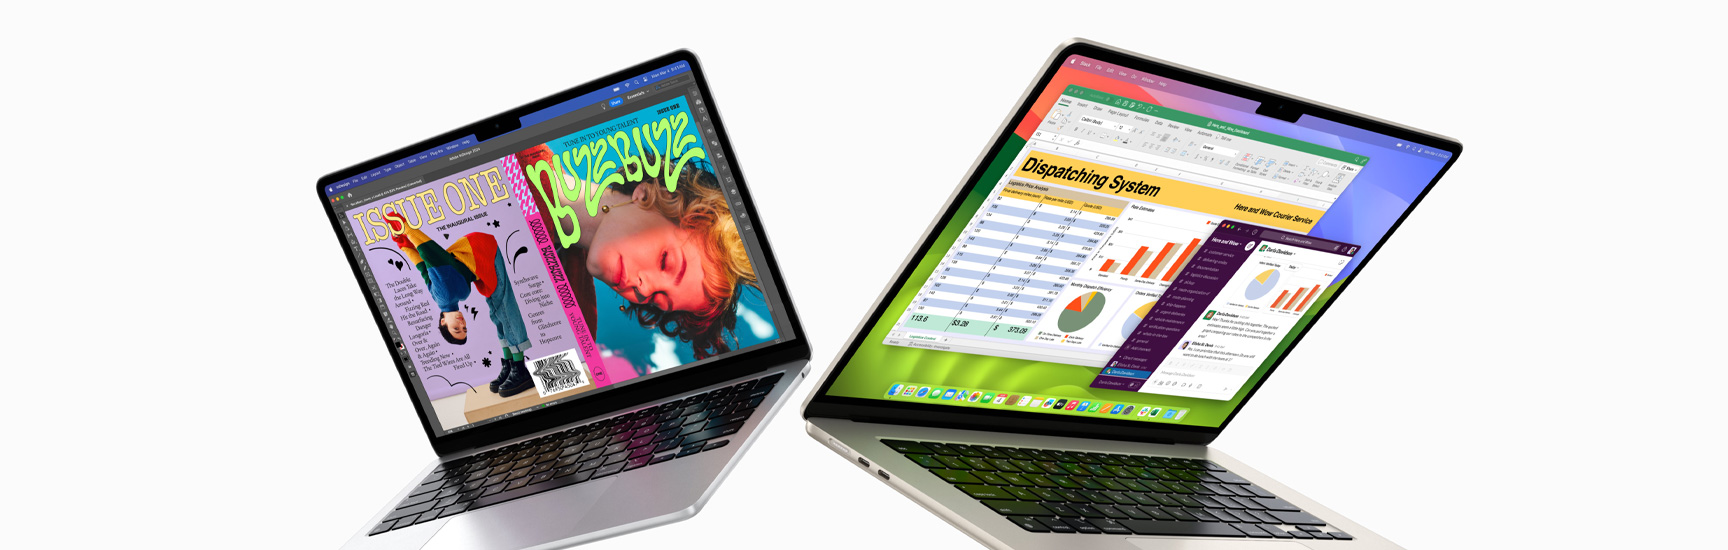 Egy részben kinyitott 13 hüvelykes MacBook Air látható a bal oldalon, míg egy 15 hüvelykes MacBook Air a jobb oldalon. A 13 hüvelykes kijelzőn egy InDesignban készült magazin címlapja látszik, a 15 hüvelykes kijelzőn pedig a Microsoft Excel és a Slack fut.